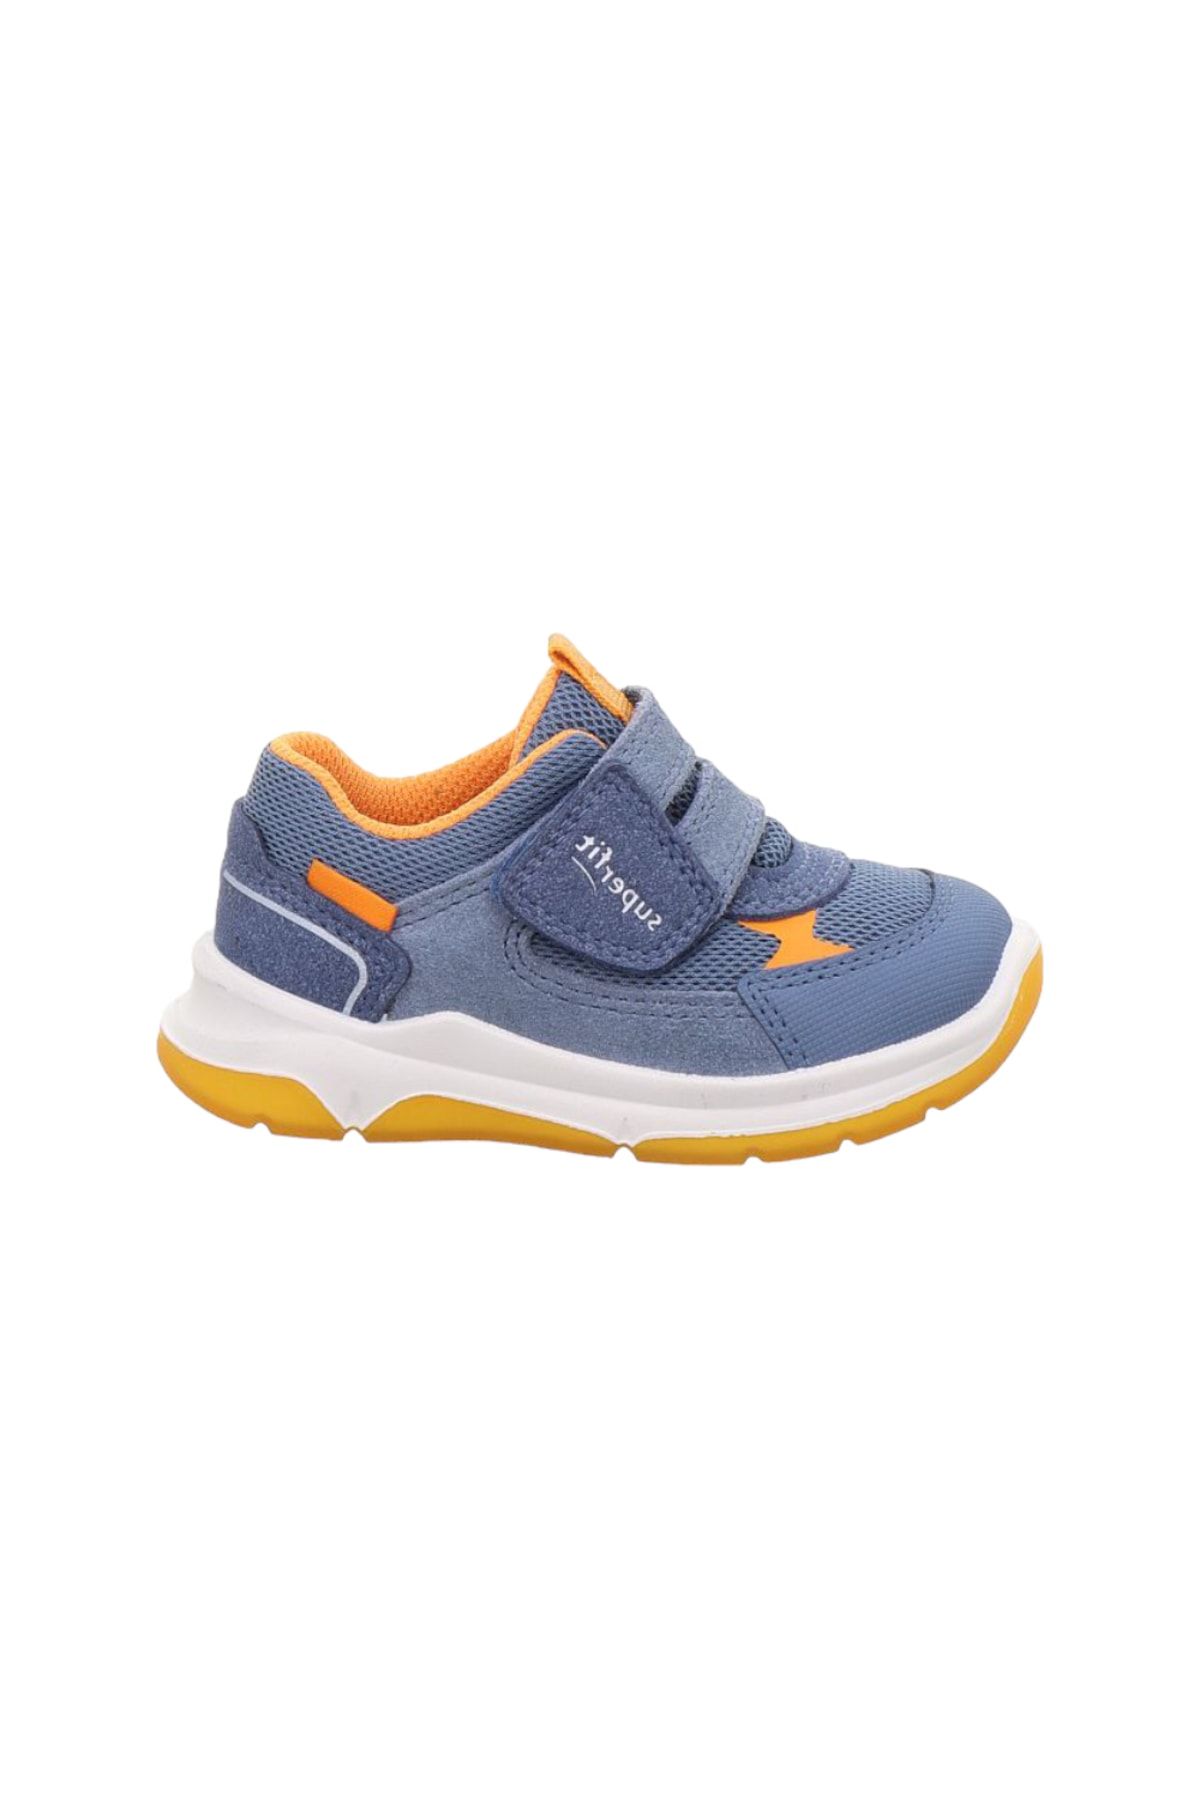 Superfit Cooper Çocuk Cırtlı Spor Ayakkabı, (medium/orta), Mavi Süet Kumaş